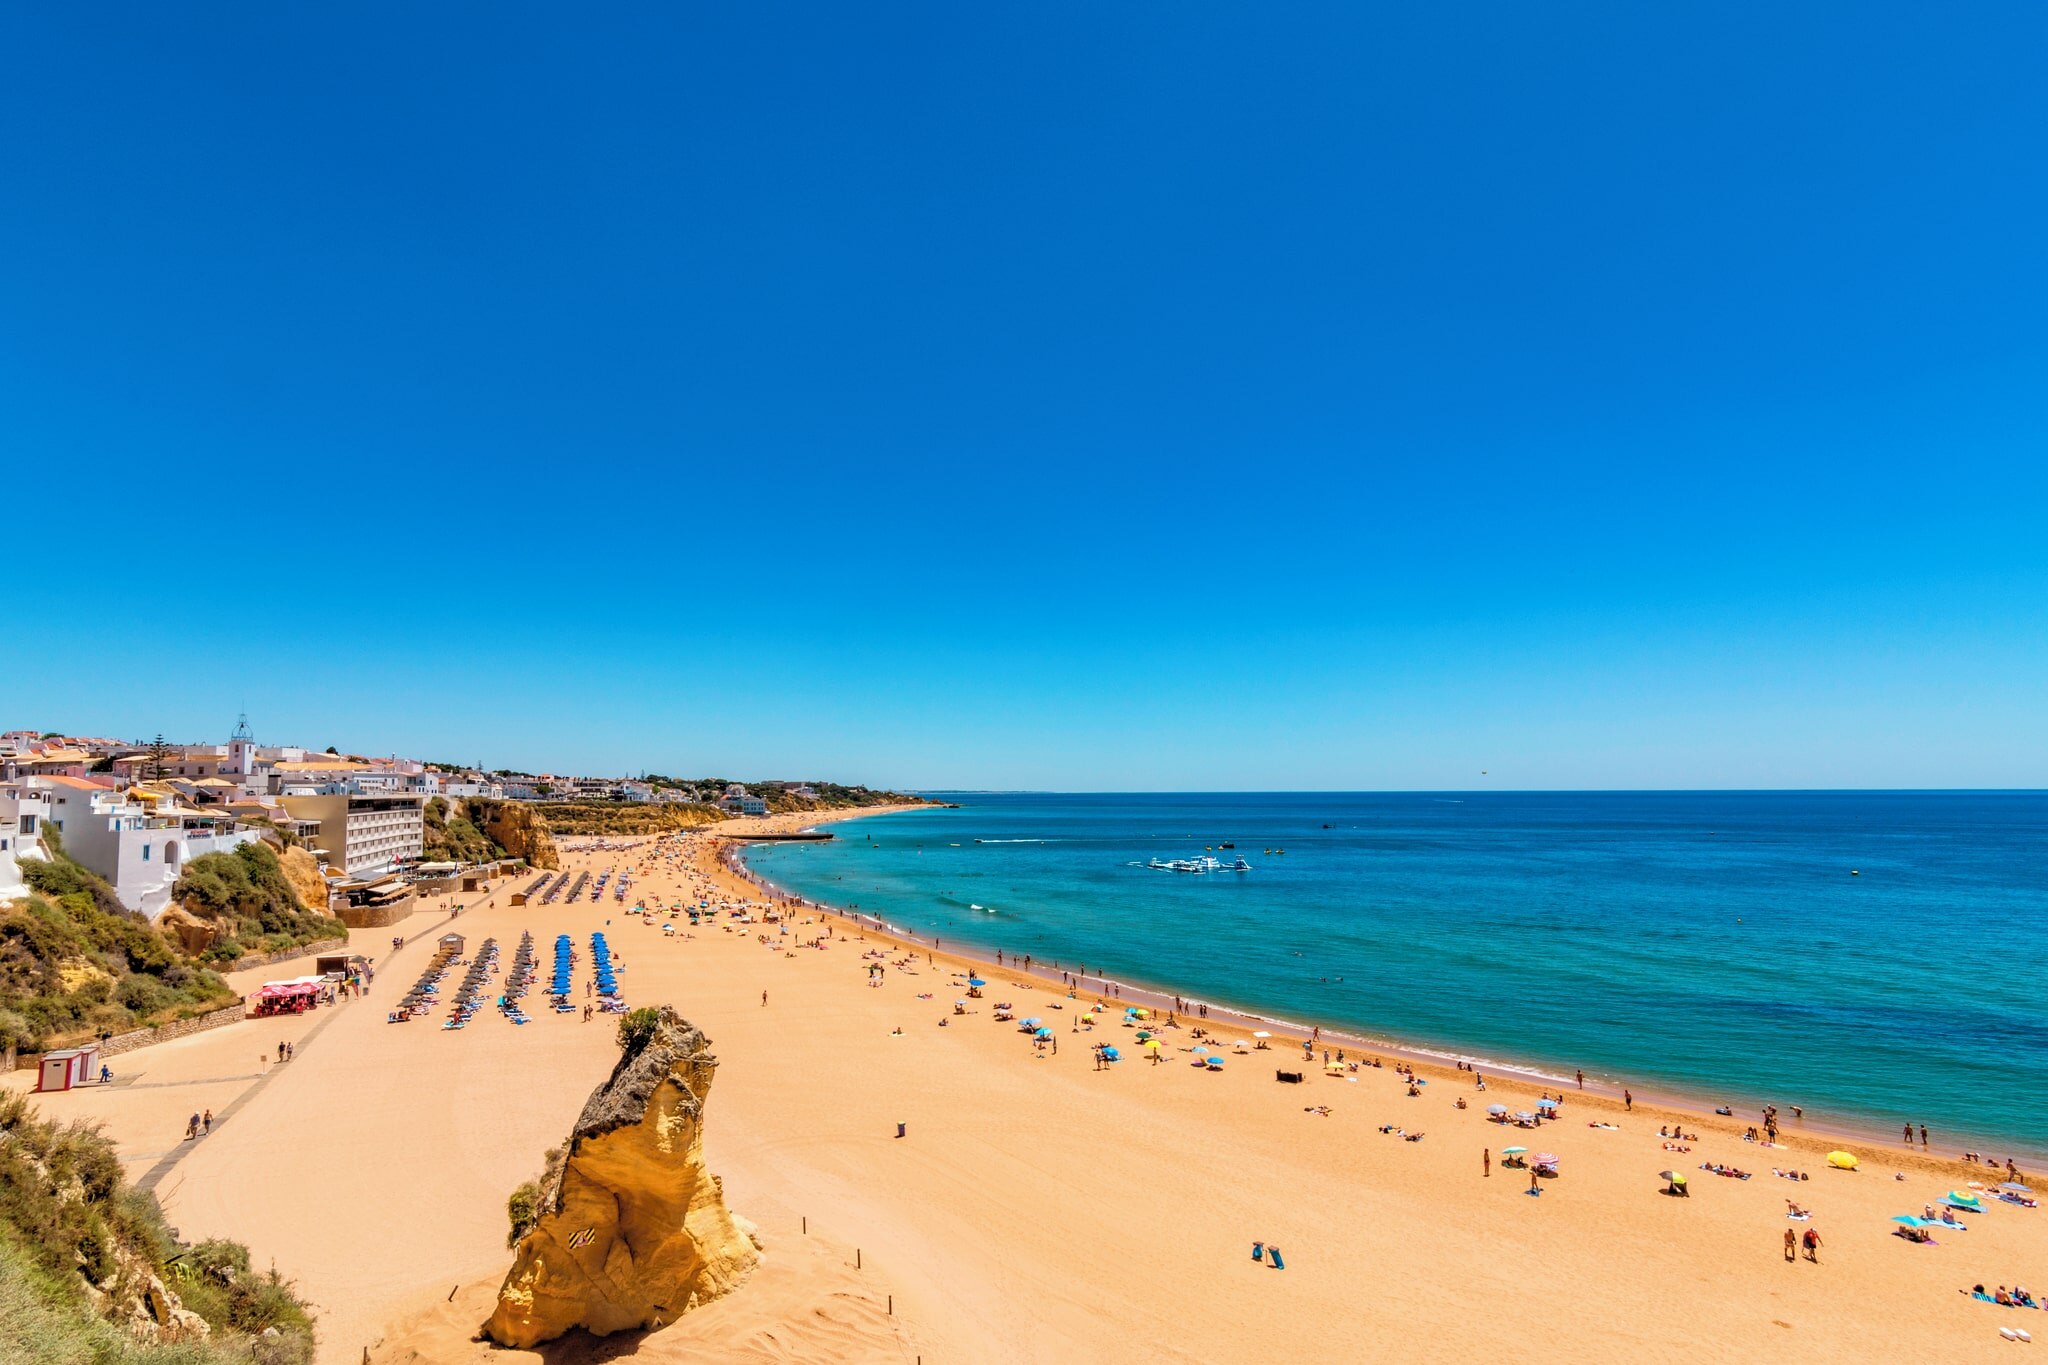 The Algarve